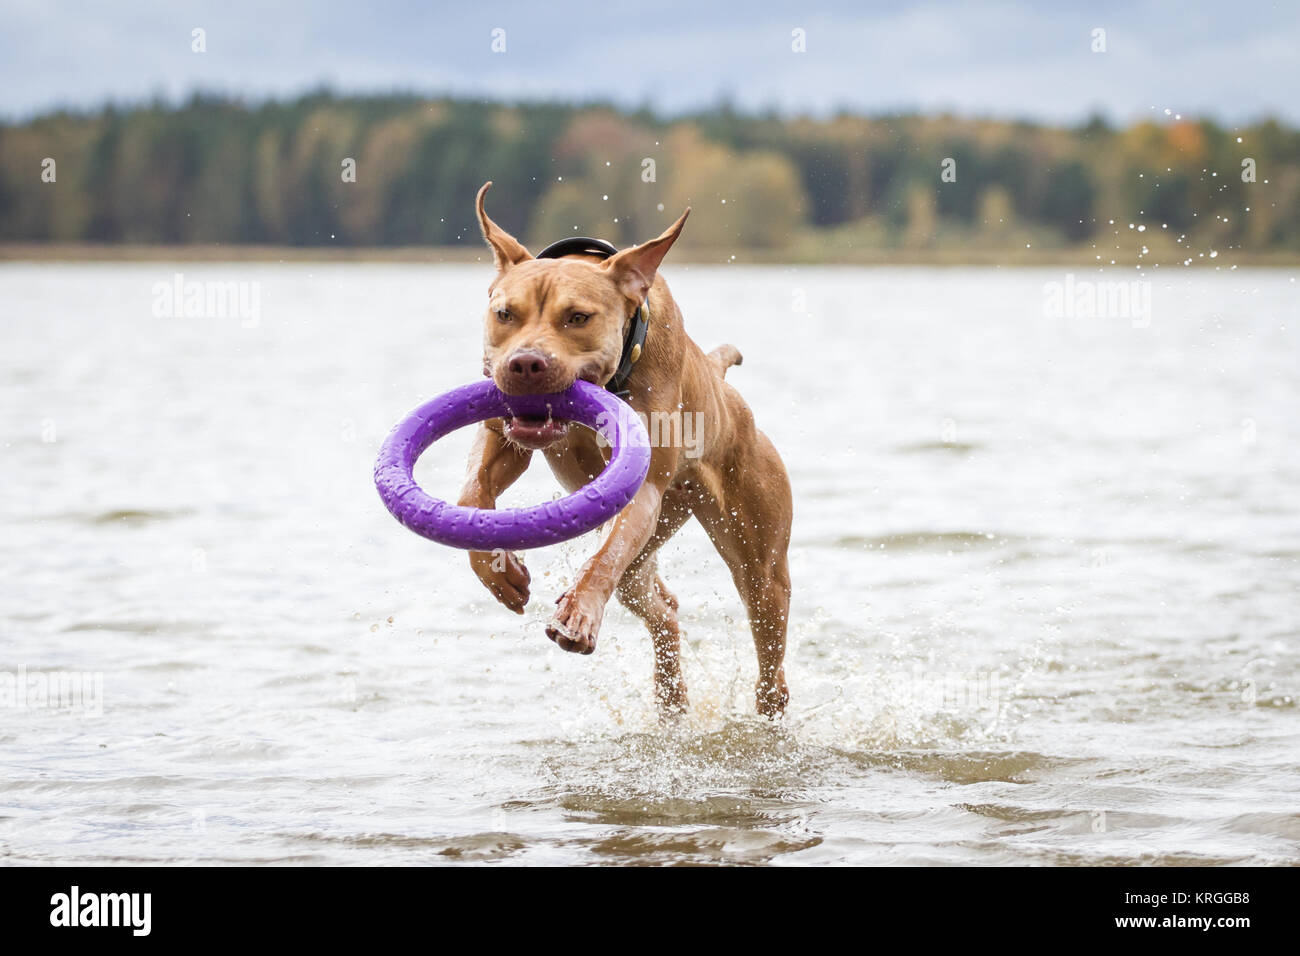 Die Pit Bulldog spielen mit einem Abzieher Spielzeug im Wasser an einem bewölkten Herbst Tag Stockfoto